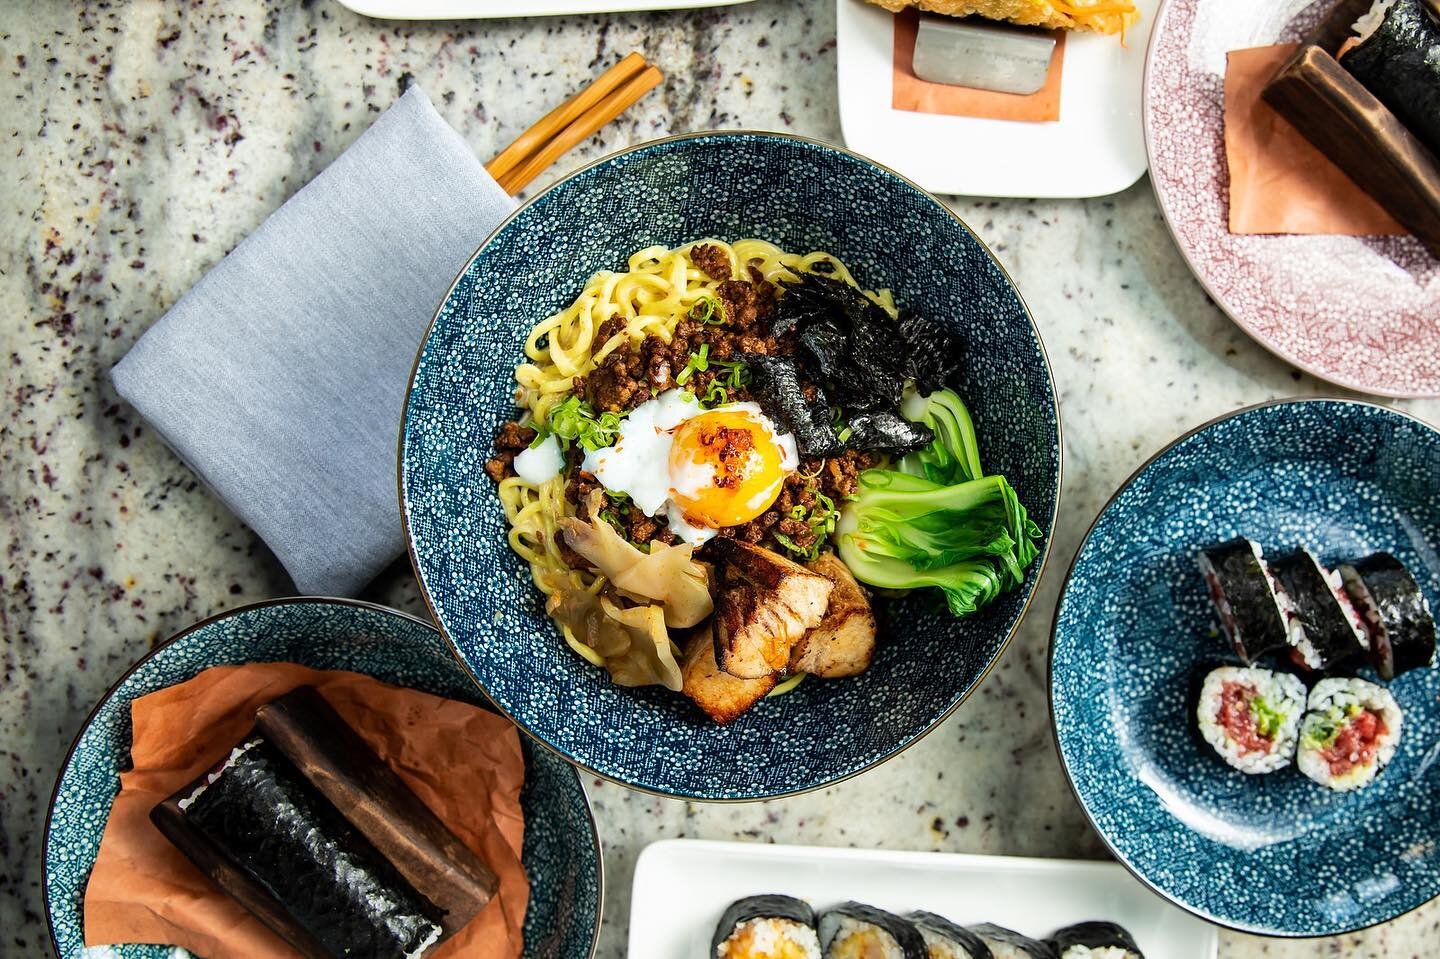 Our Tantan Mazemen 
Soupless noodle/spicy meat sauce, soft boiled egg
.
.
. 📸 @marencophoto 
.
#sushiwhisperer #philadelphia #fishtown #sushi #izakayabyyanaga #gluhospitality #tuna #spicytunaroll #cocktails #japanesefood